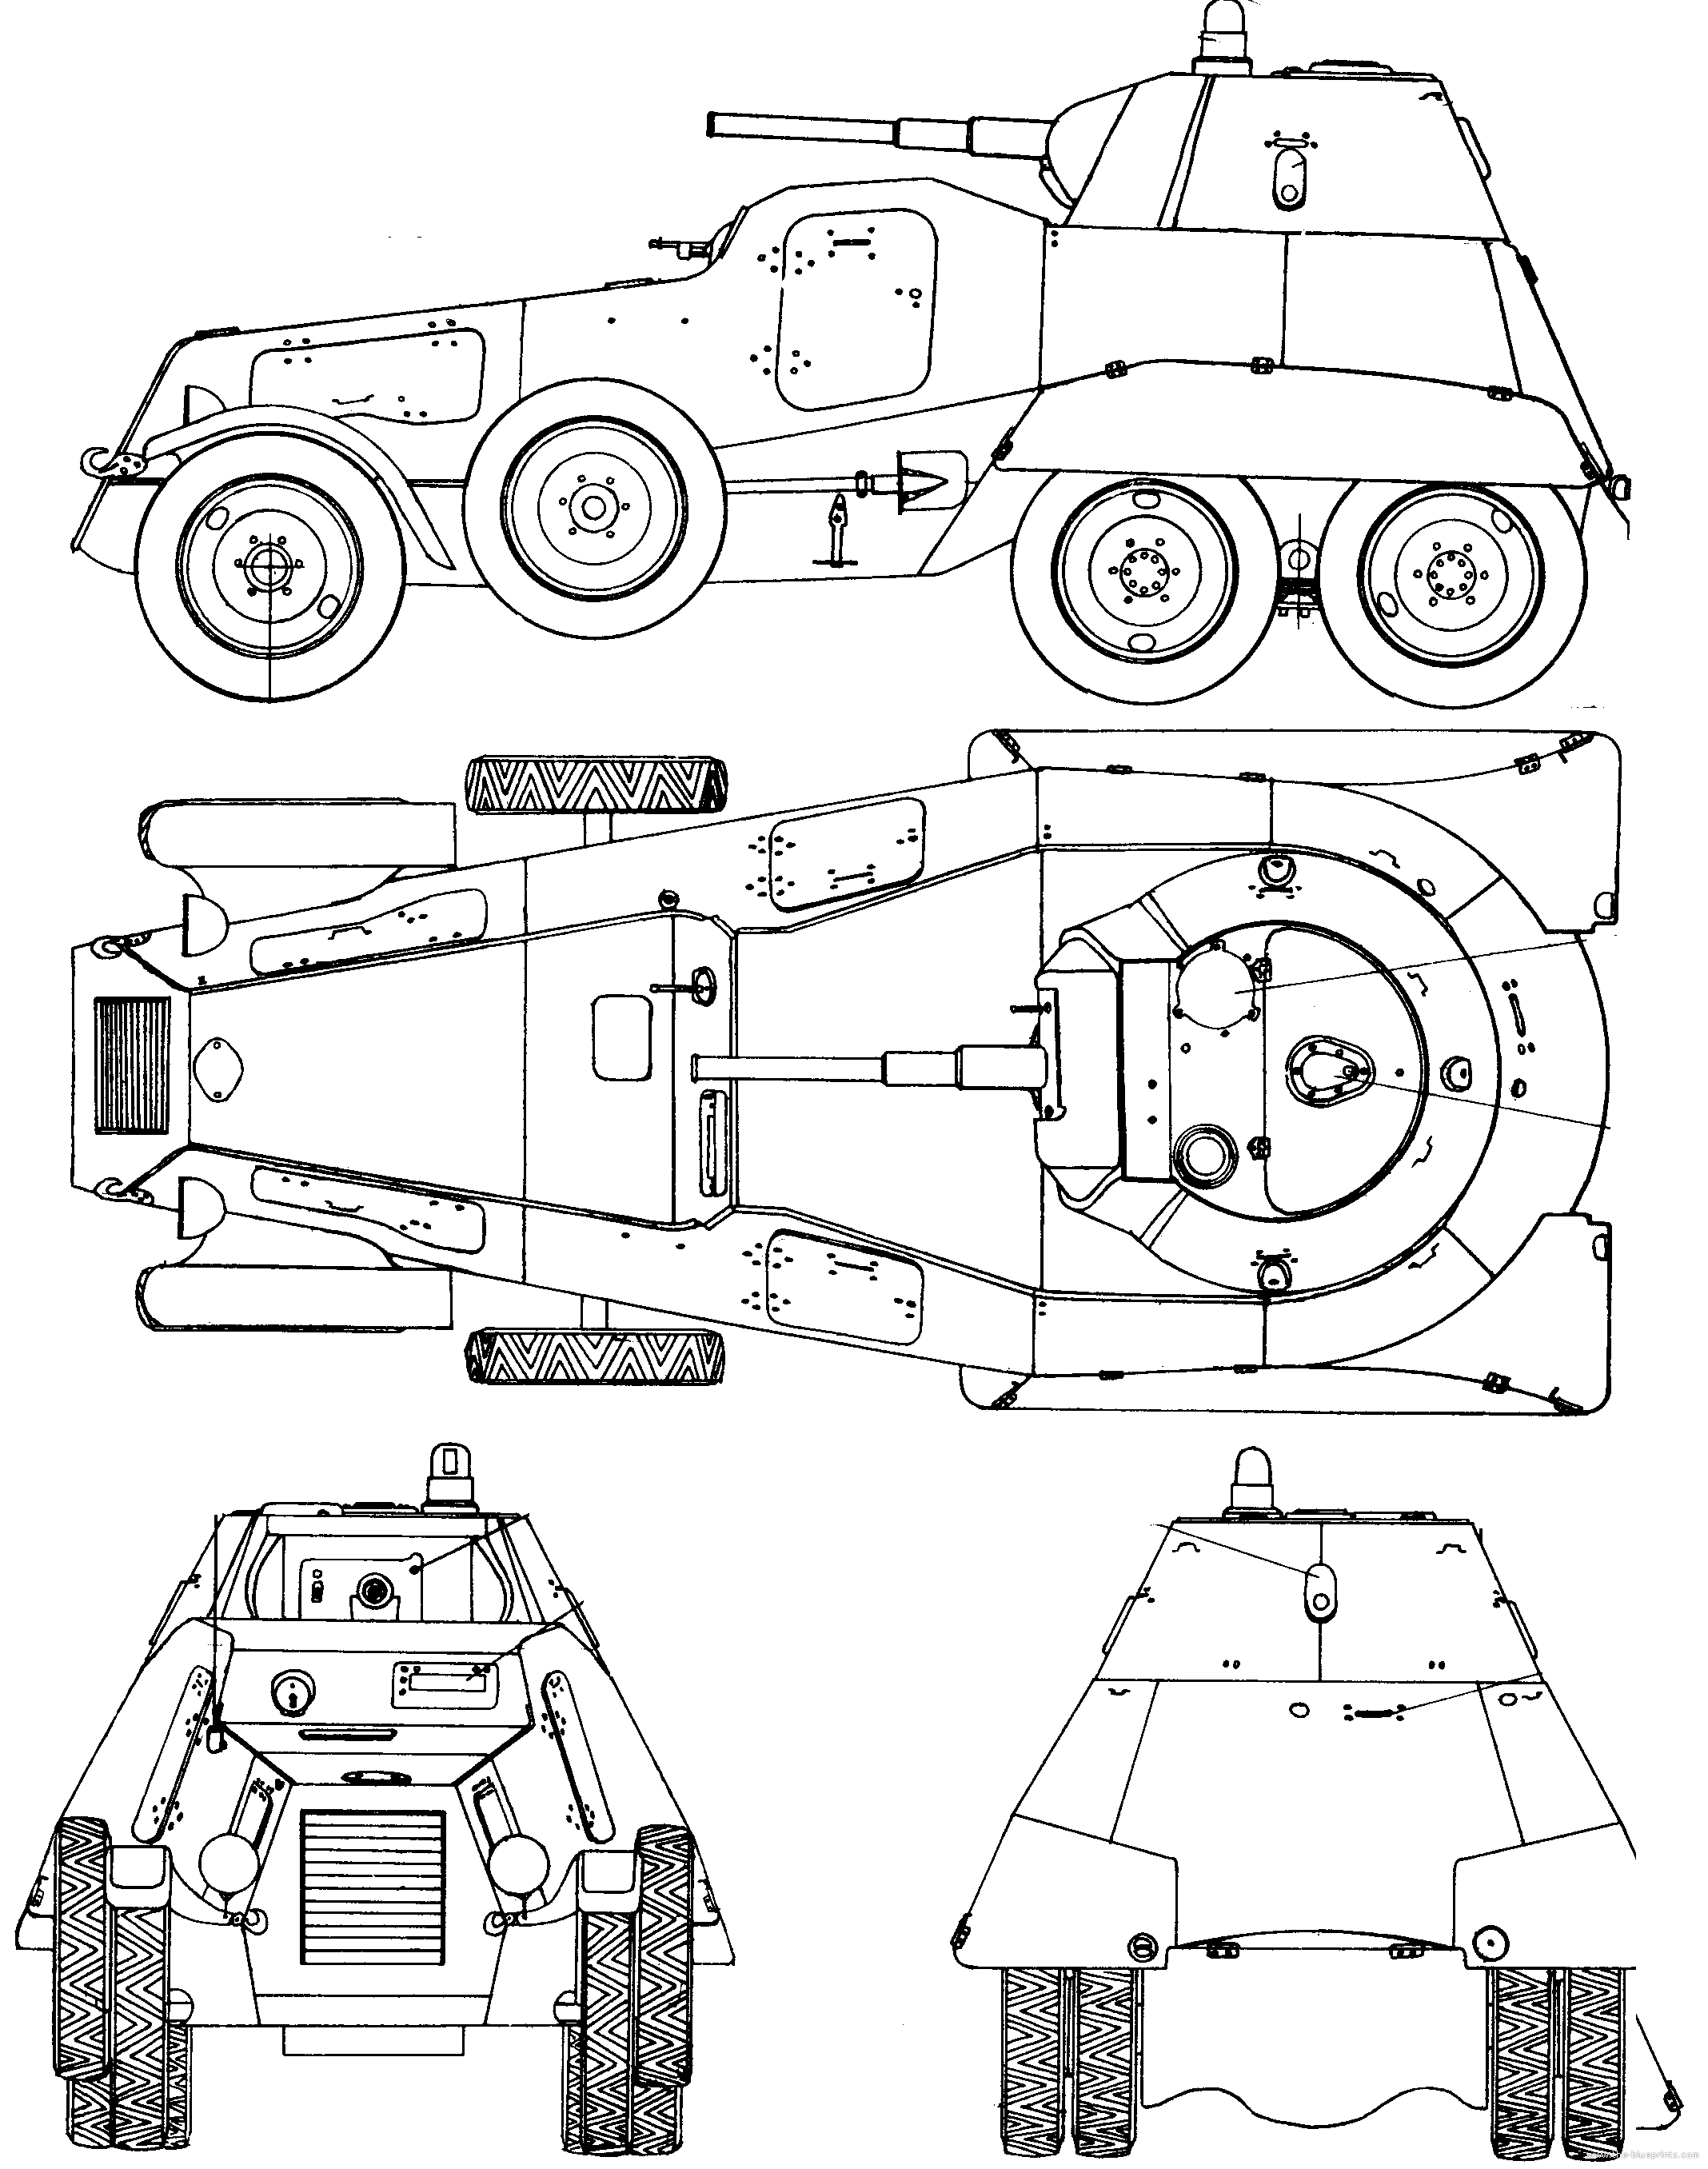 Ба-64 ? описание бронеавтомобиля, машины войны